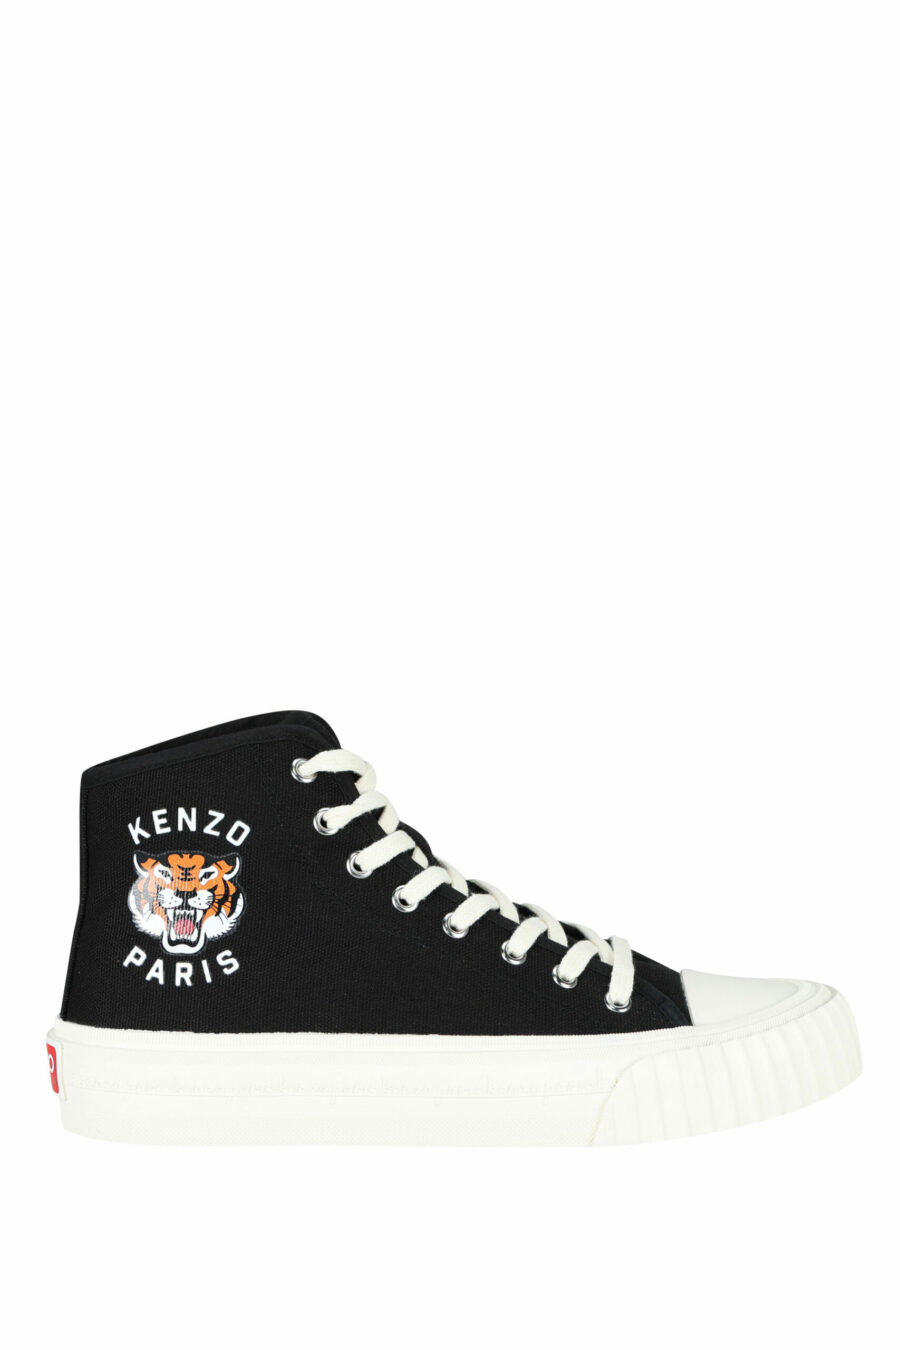 Zapatillas negras altas con logo "kenzo foxy" con logo tigre - 3612230649712 scaled